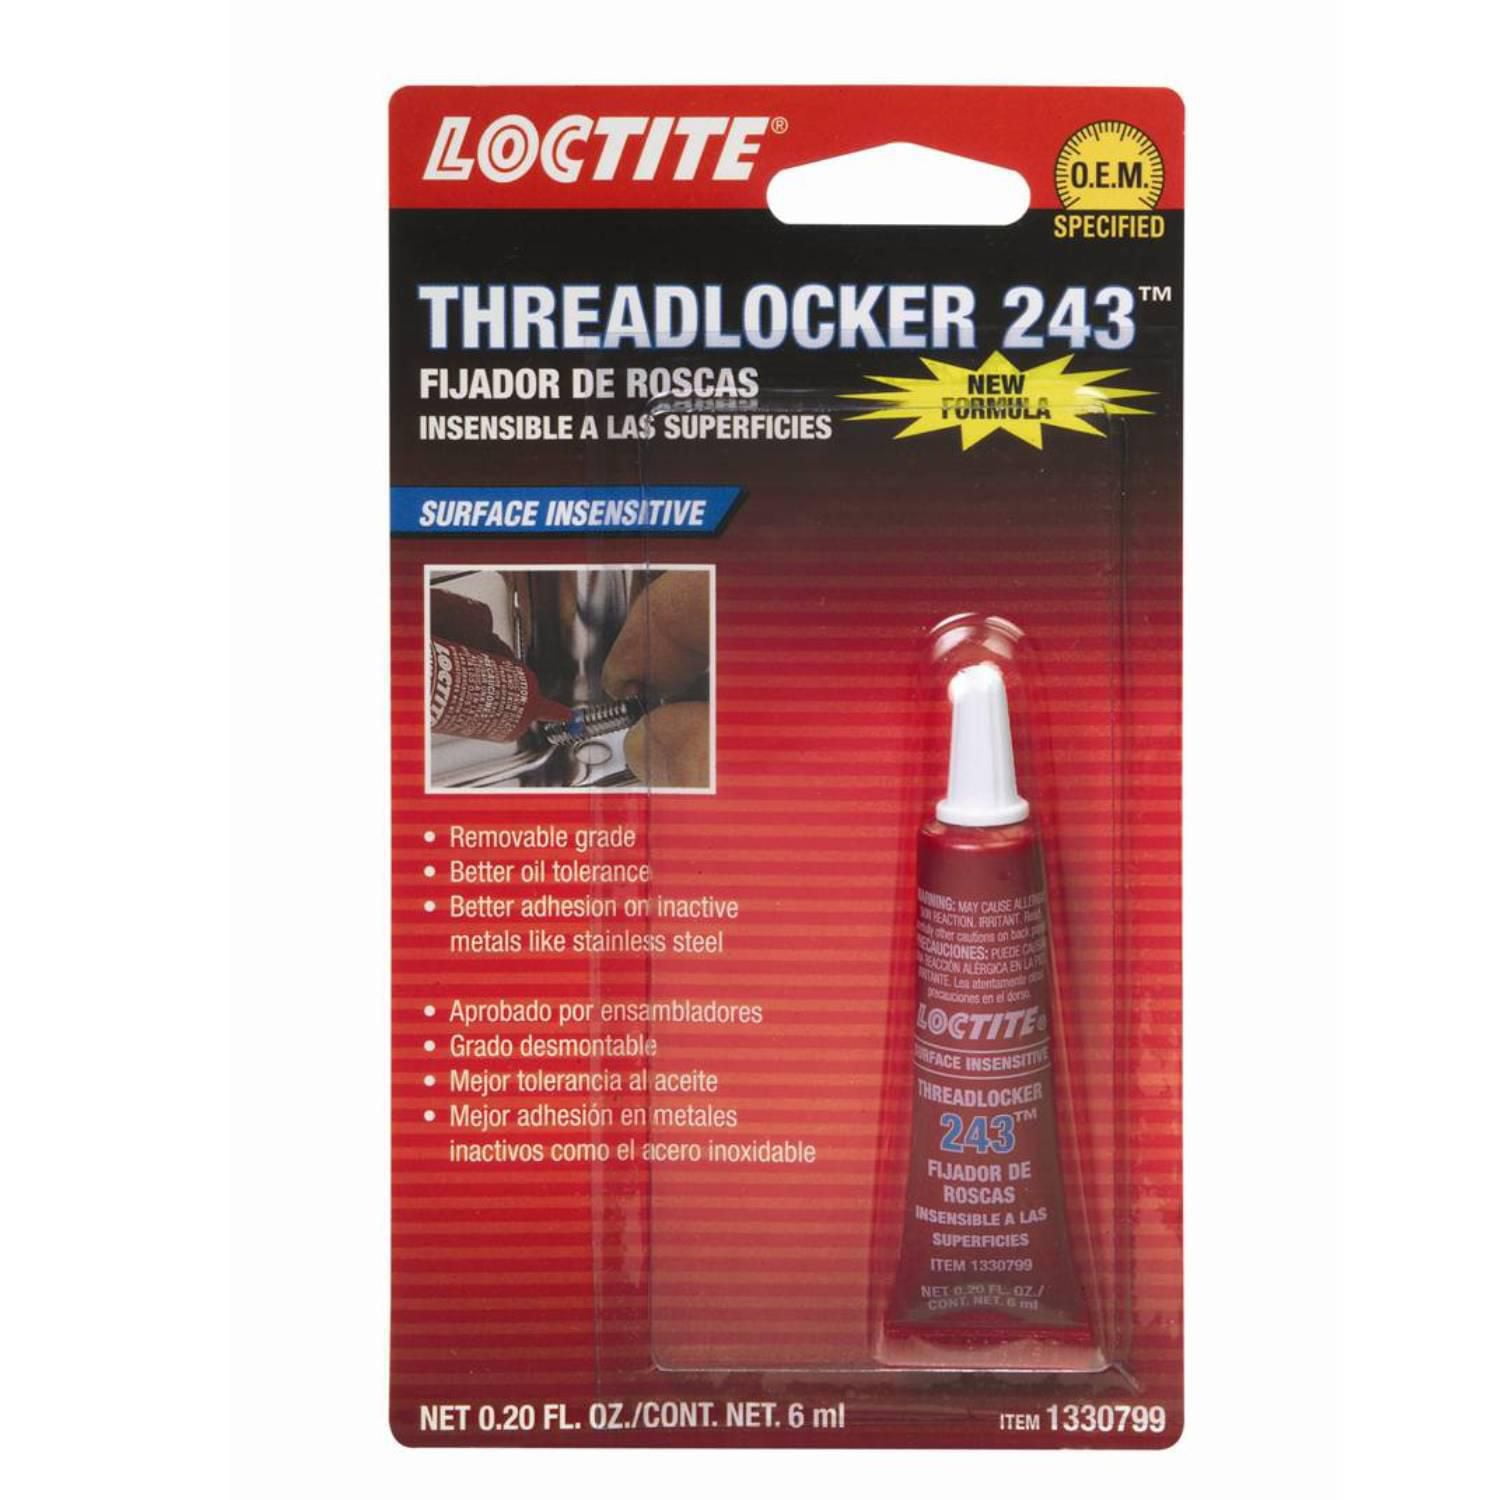 Loctite 243 Thread Locker & Sealer – 3DM Suspension